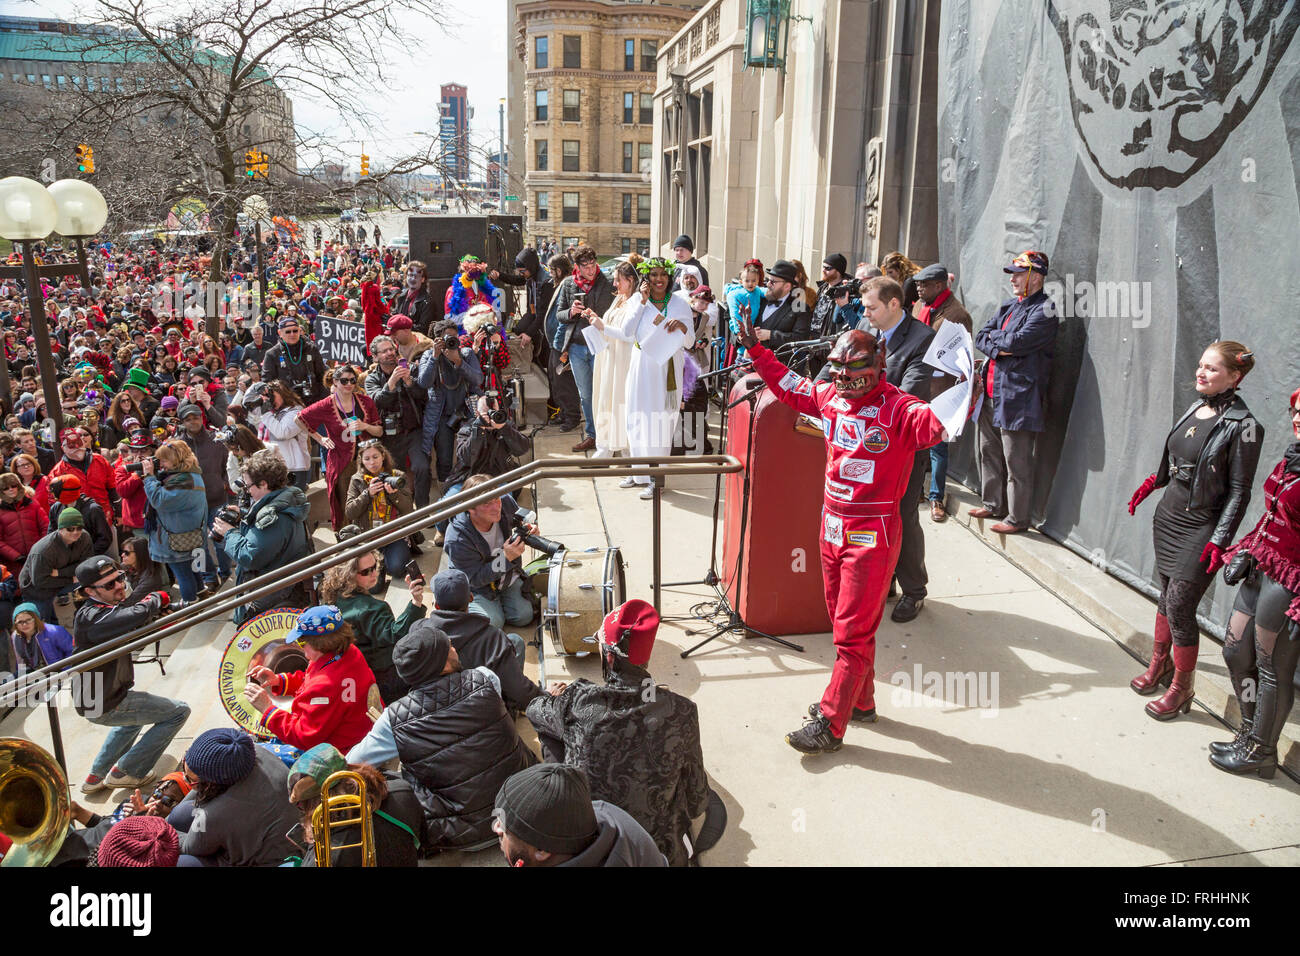 Detroit, Michigan - Marche du Nain Rouge celebra la venuta della molla e bandisce la Nain Rouge (Red Dwarf) da Detroit Foto Stock